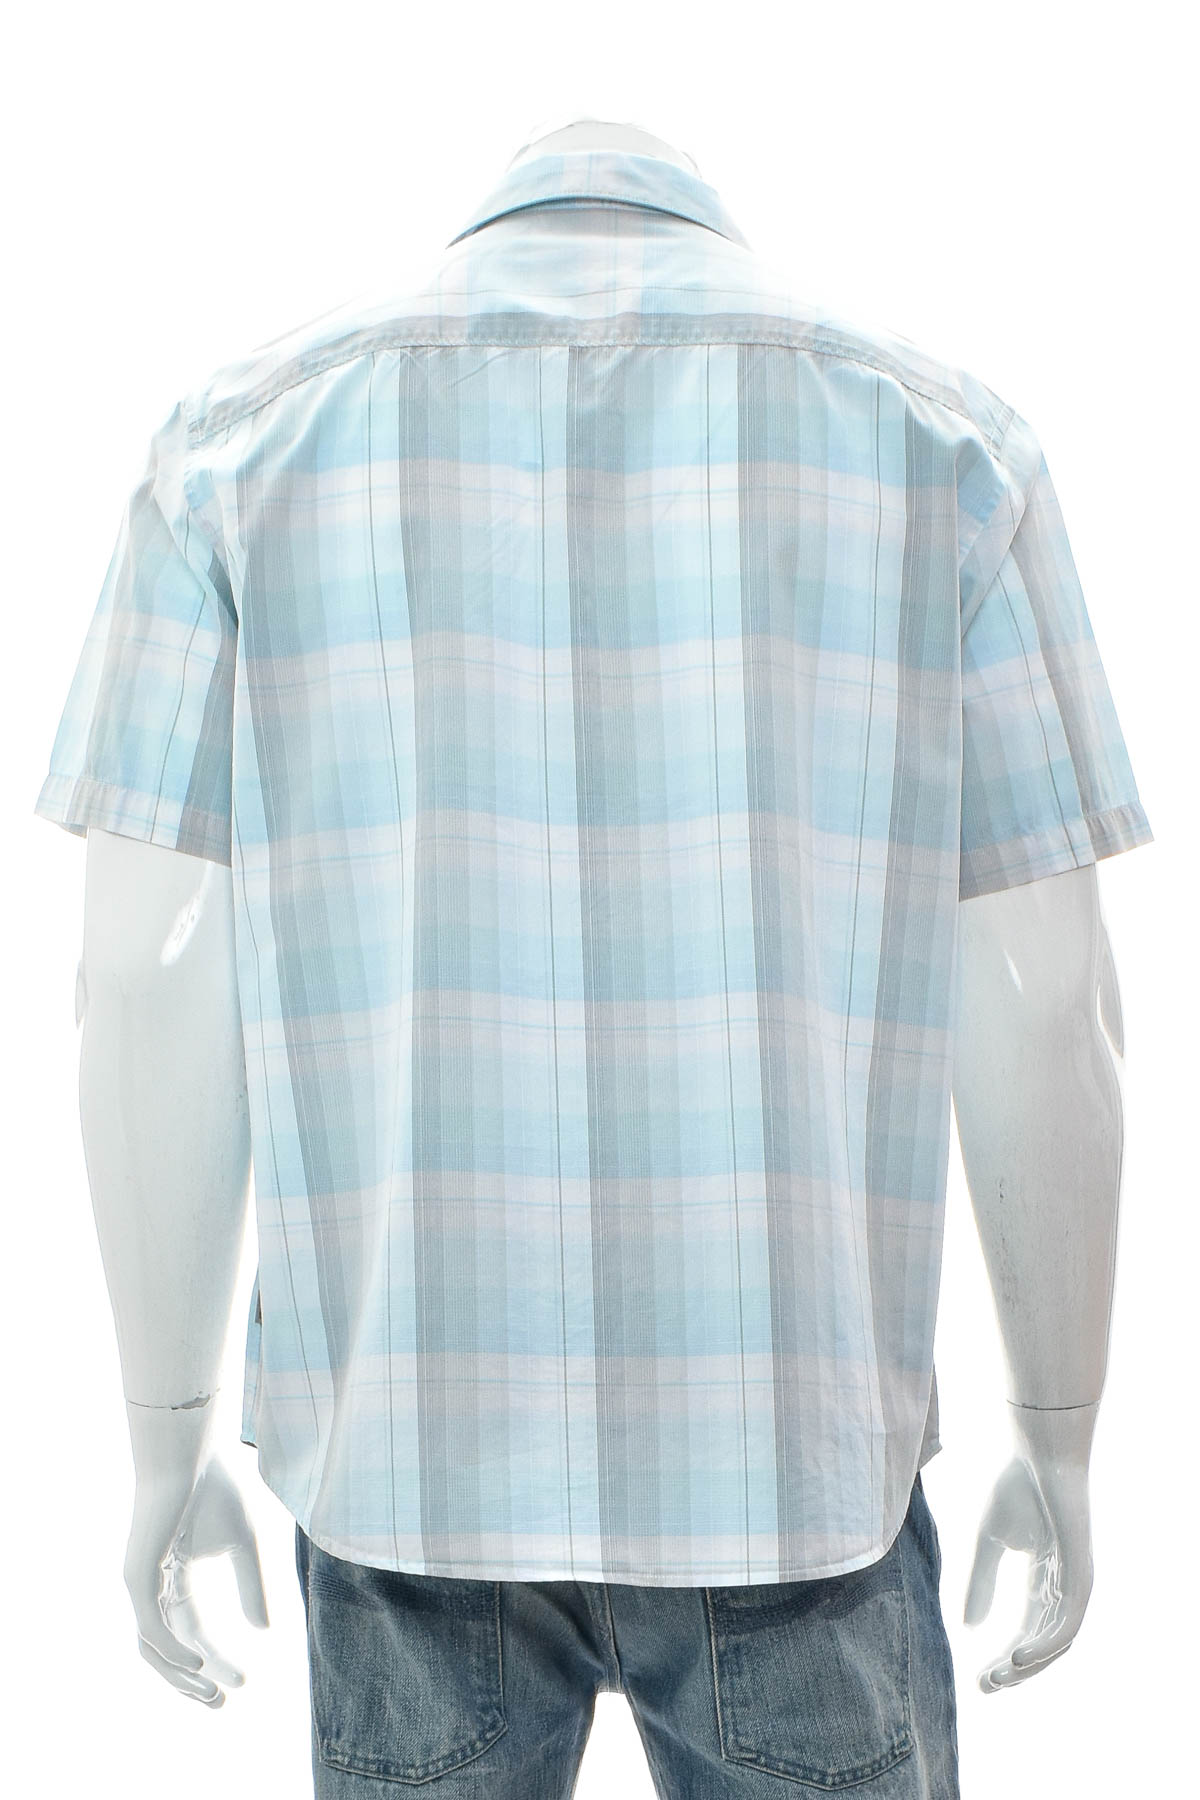 Ανδρικό πουκάμισο - Calvin Klein - 1